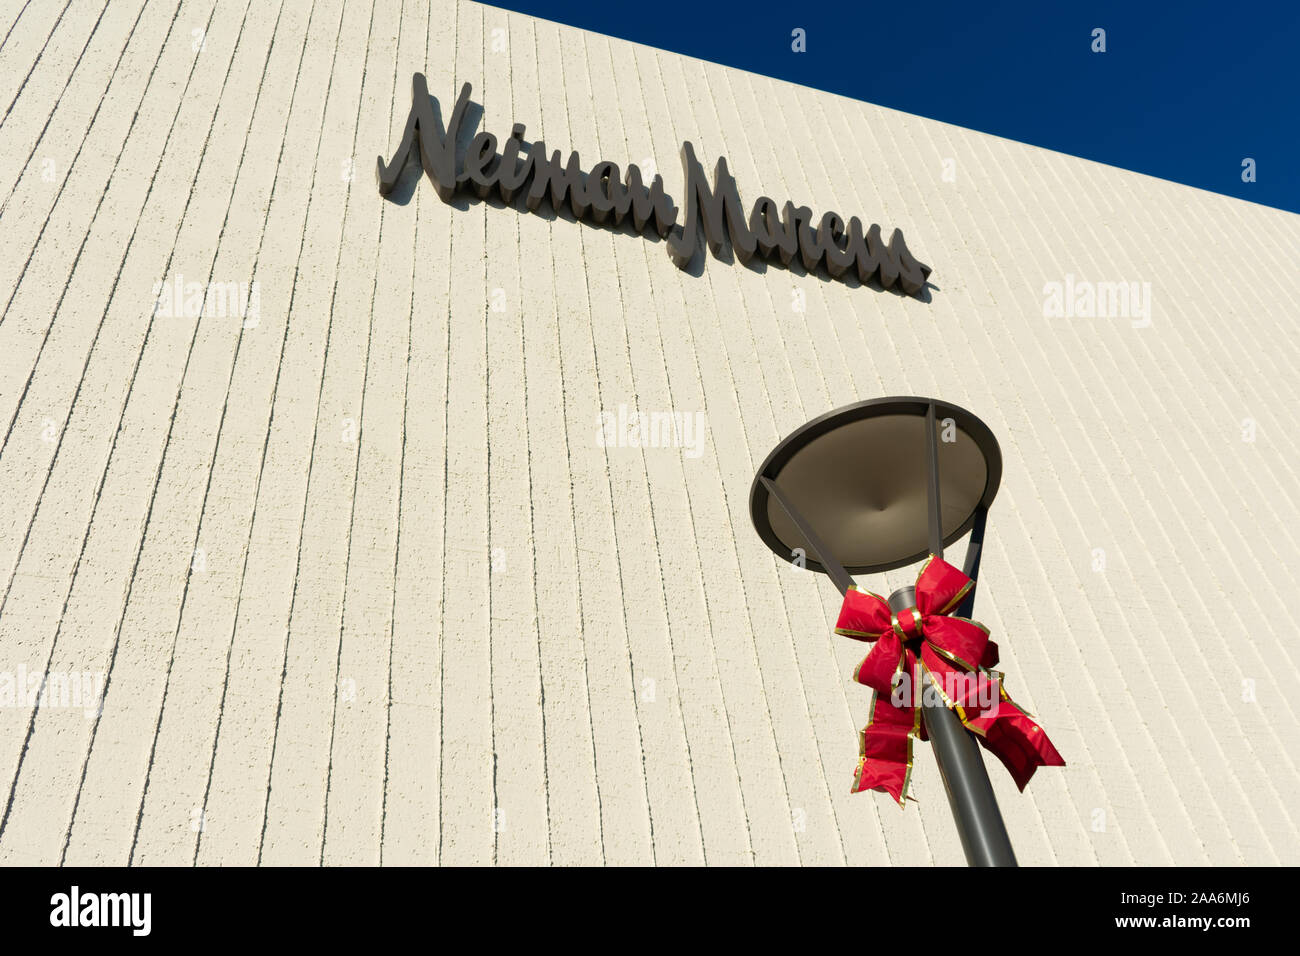 Vacanze di Natale arco su via la luce. Neiman Marcus Luxury department store. - Palo Alto, CA, Stati Uniti d'America - Novembre, 2019 Foto Stock